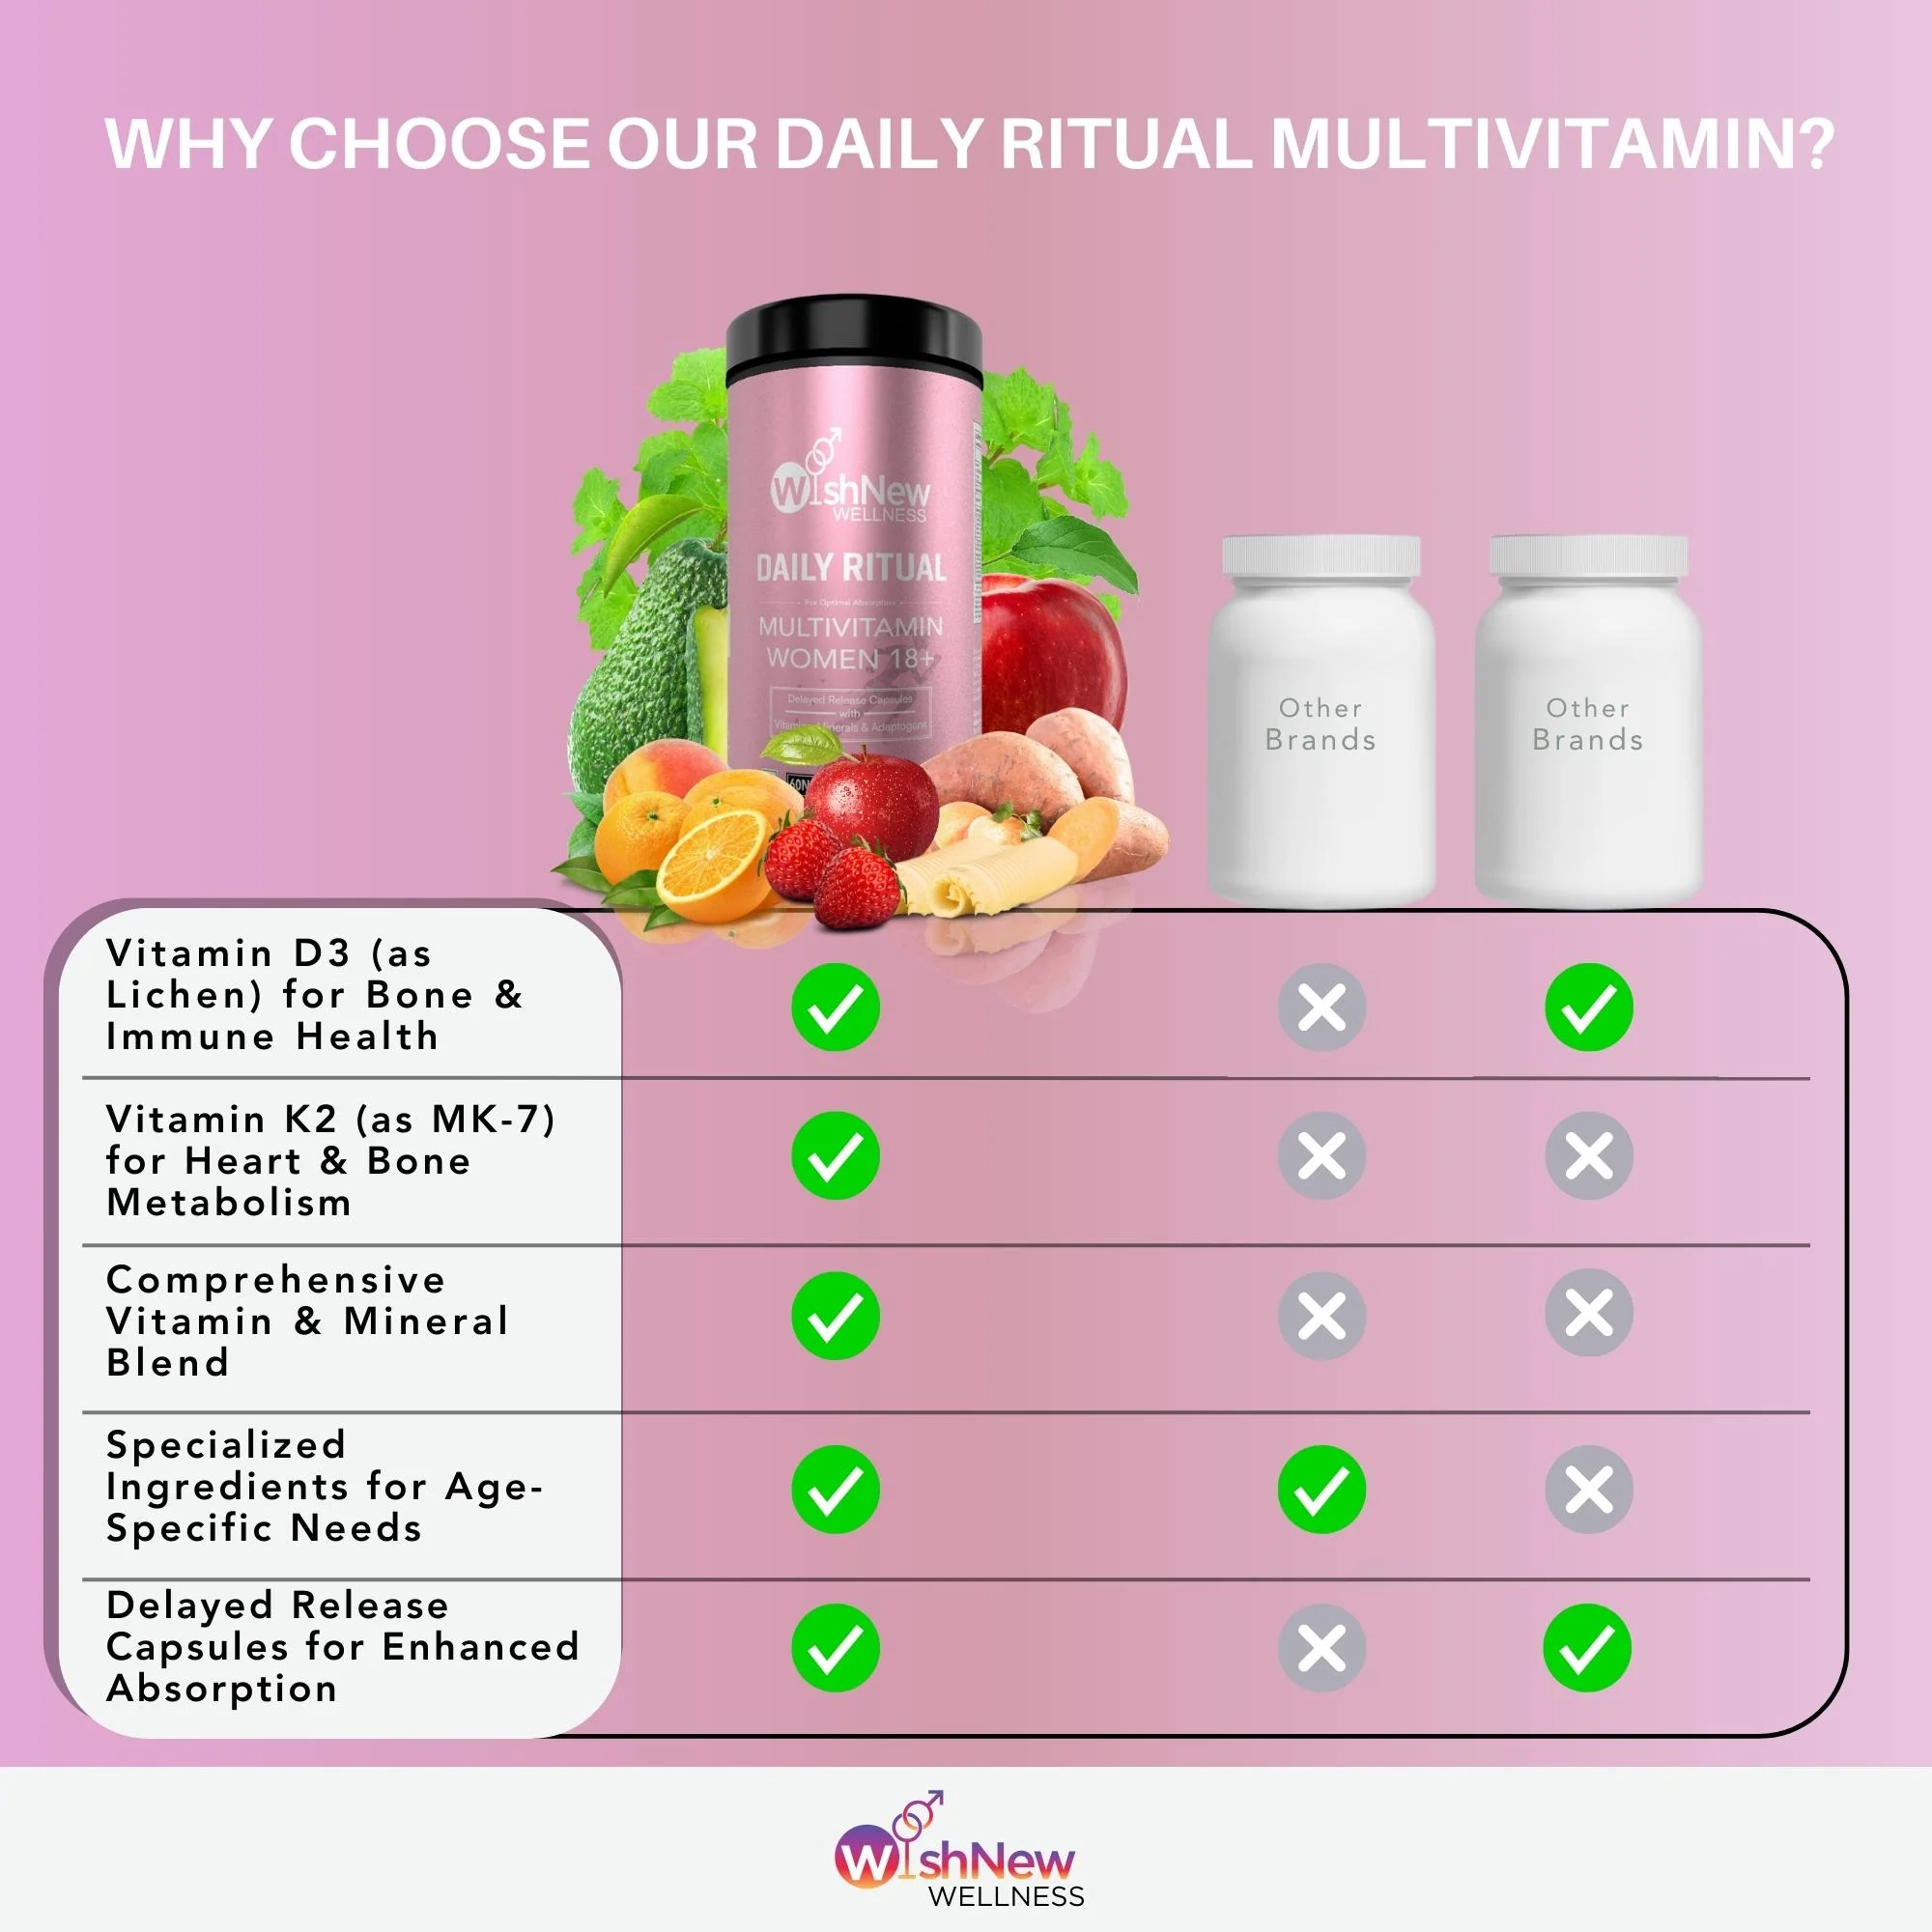 WishNew Wellness – DAILY RITUAL MULTIVITAMIN WOMEN 18+ (60 capsules )